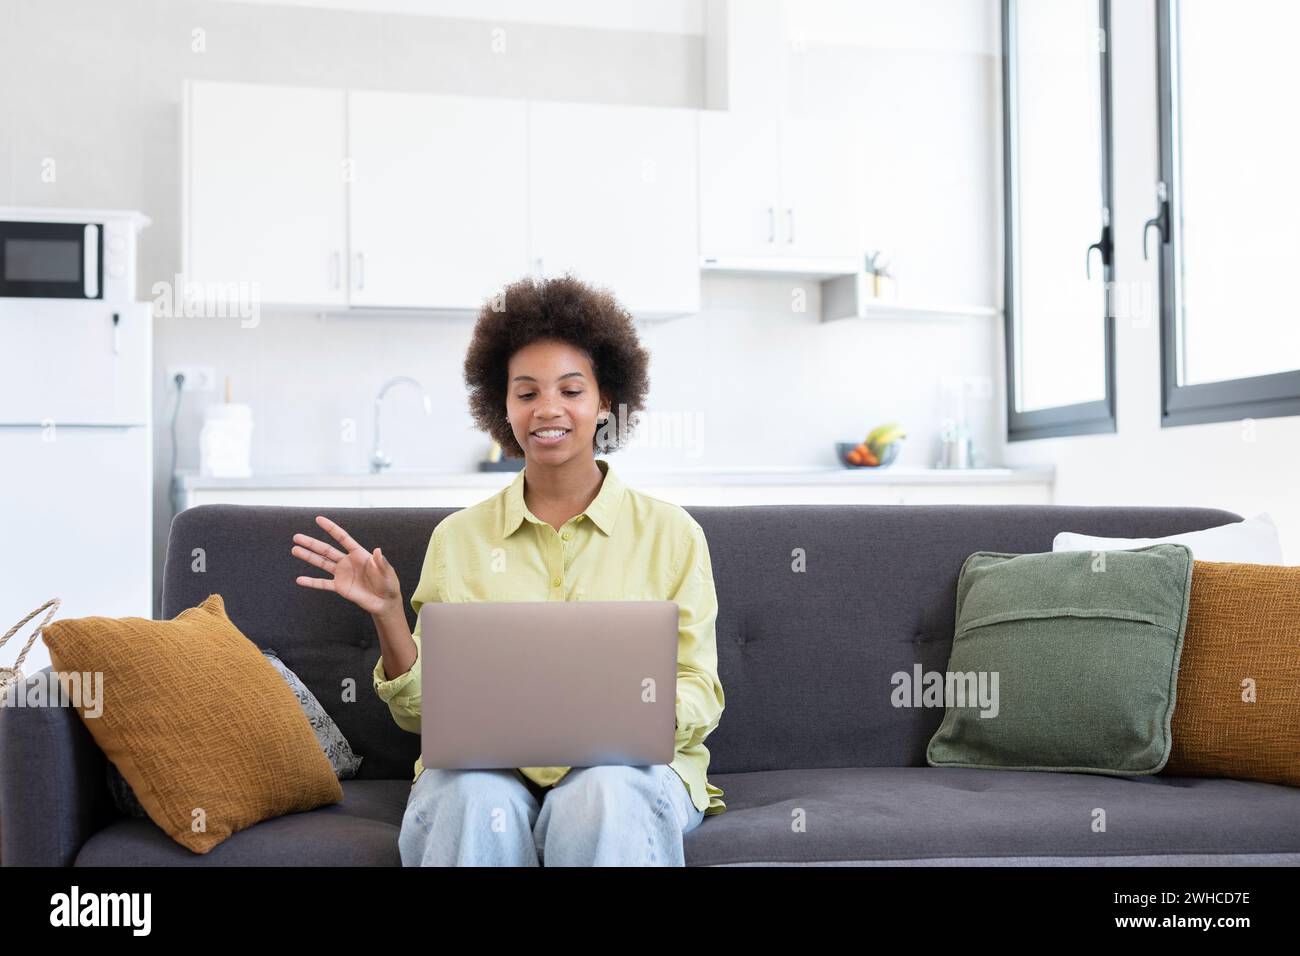 Einfaches Lernen. Lächelnde junge Dame mit gemischter Rasse sitzt auf der Couch und sucht Informationen mit Laptop. Webinar-Video-Lektion ansehen. Positive schwarze Frauen nutzen Online-Bildungsdienste, um das Wwinken von Fähigkeiten zu verbessern Stockfoto